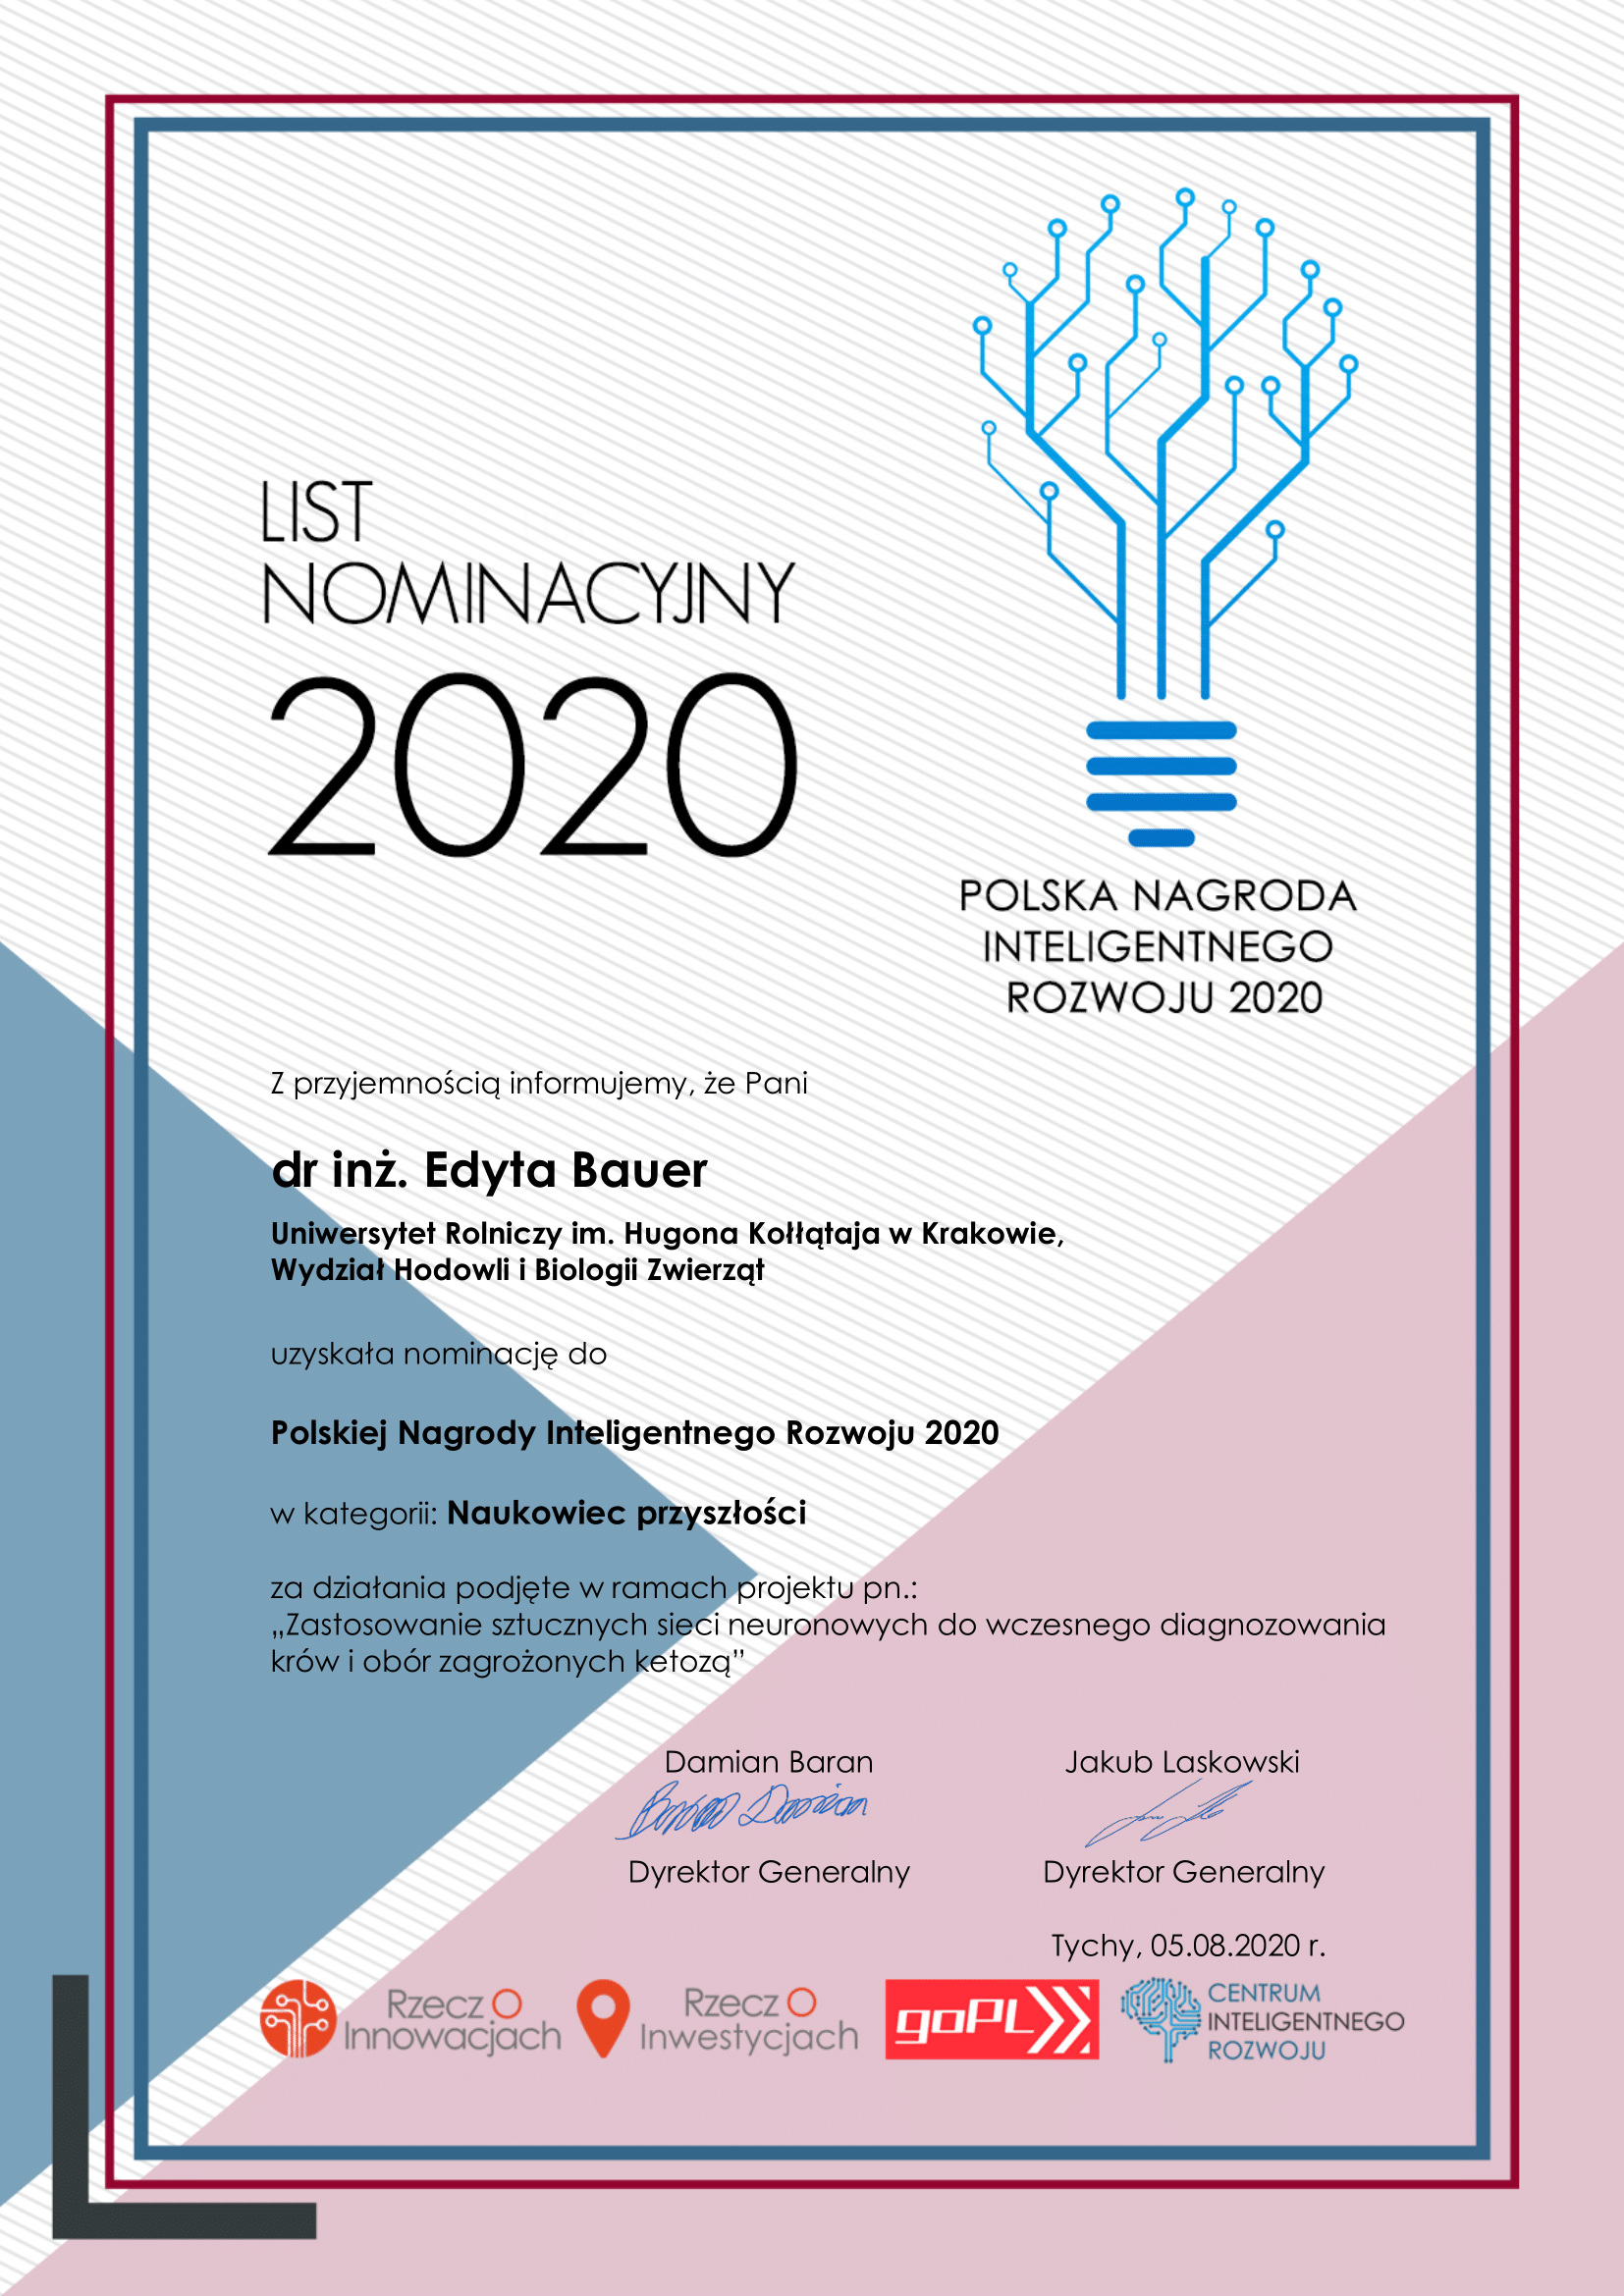 List Nominacyjny 2020- dr inż. Edyta Bauer - Polska Nagroda Inteligentnego Rozwoju 2020